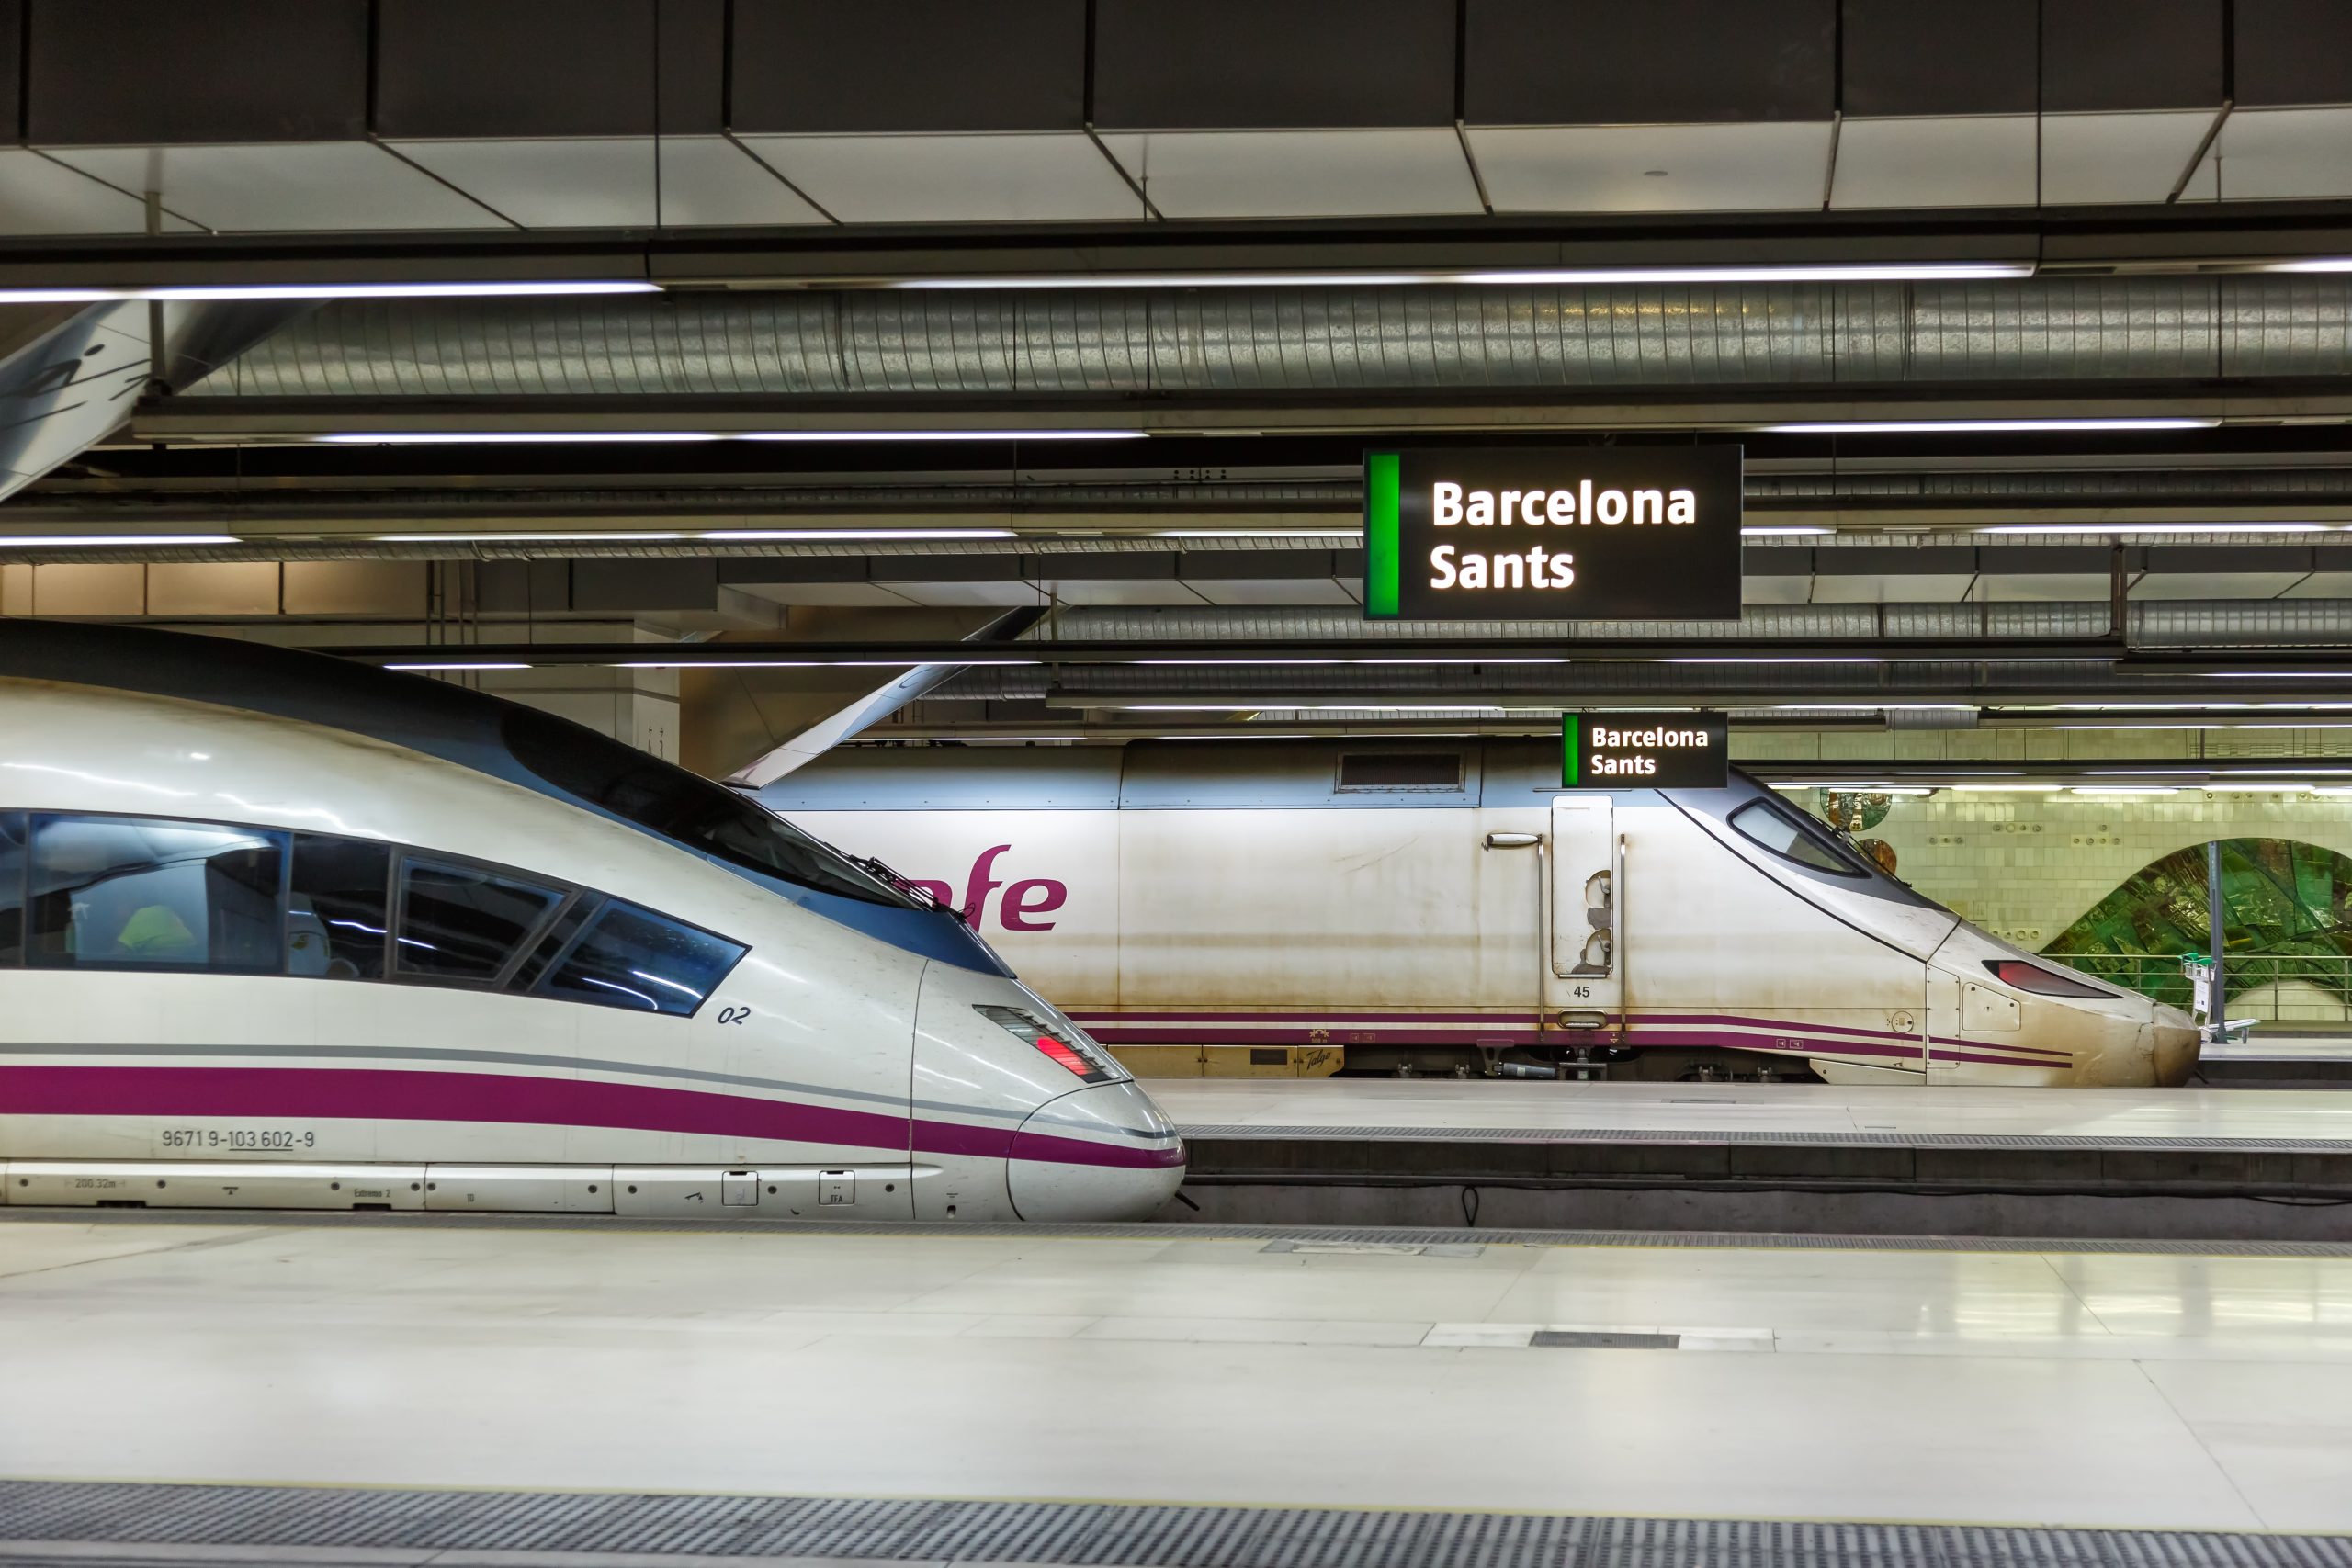 Renfe train in Barcelona (Photo: Shutterstock)